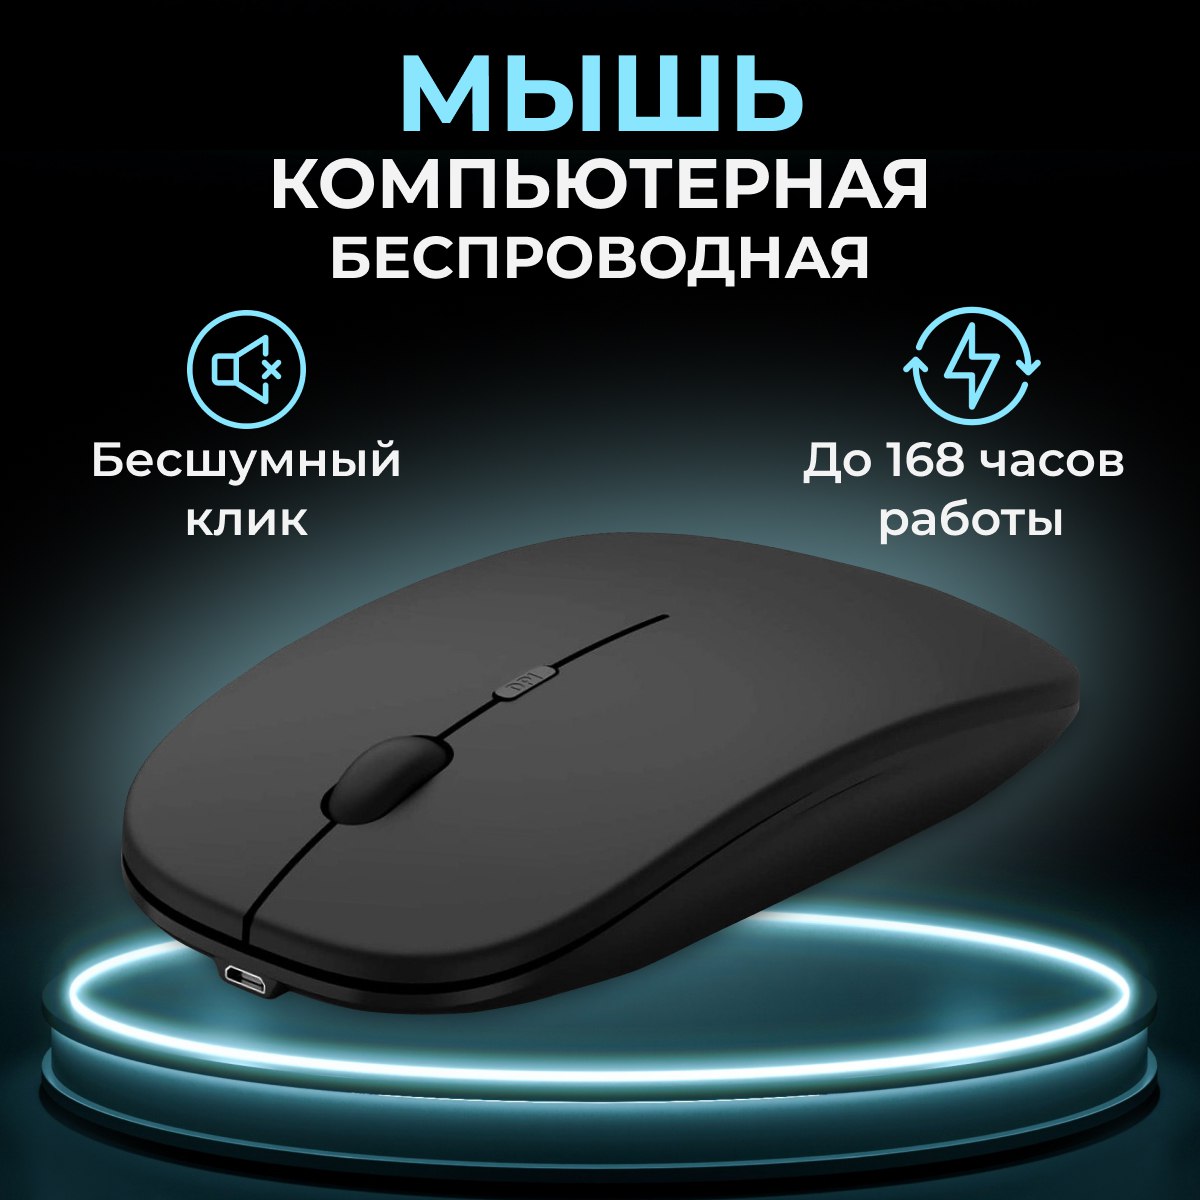 Беспроводная мышь Time for Electronik M01 черный, купить в Москве, цены в интернет-магазинах на Мегамаркет